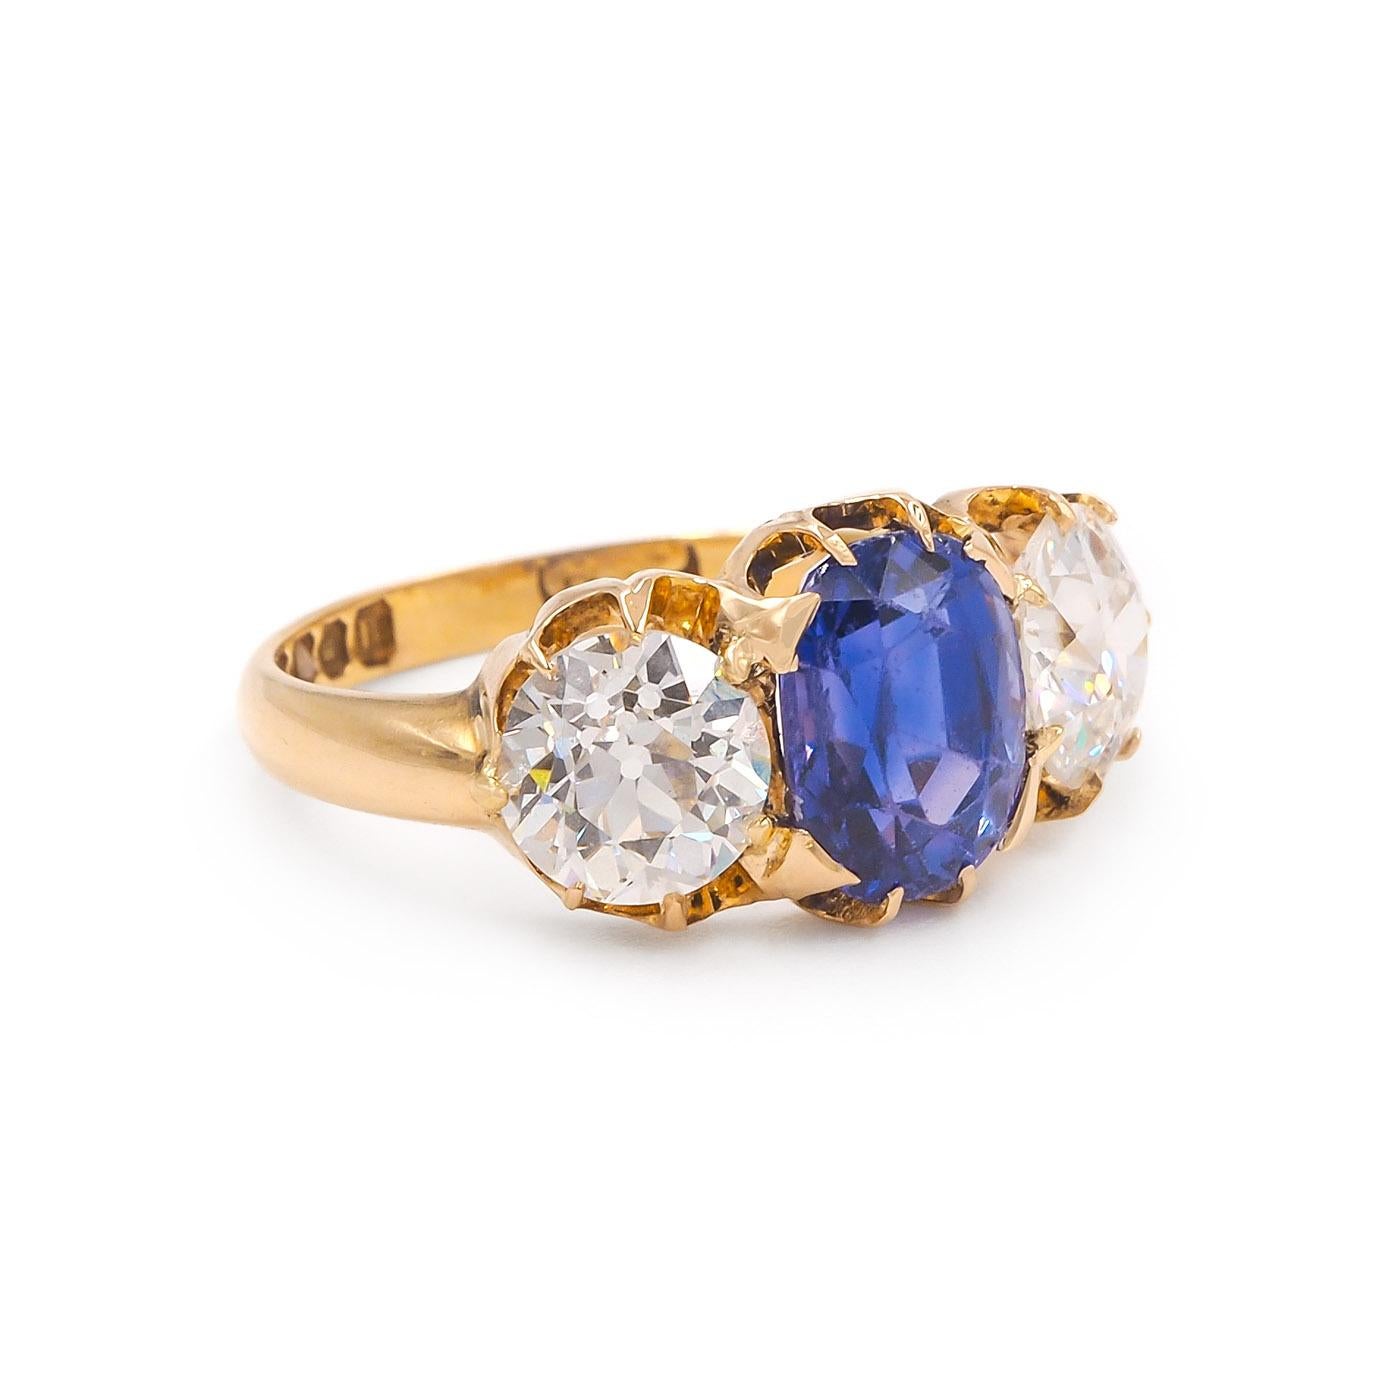 Englisch Herkunft Edwardian Ära 2,75 Karat Oval Cut Sapphire & 2,14 Ctw. Old European Cut Diamond 3-Stone Ring, bestehend aus 18k Gelbgold. Die Mitte 2,75 Karat Oval Cut blauen Saphir ist AGL zertifiziert, Ceylon Herkunft und mit keinen Anzeichen